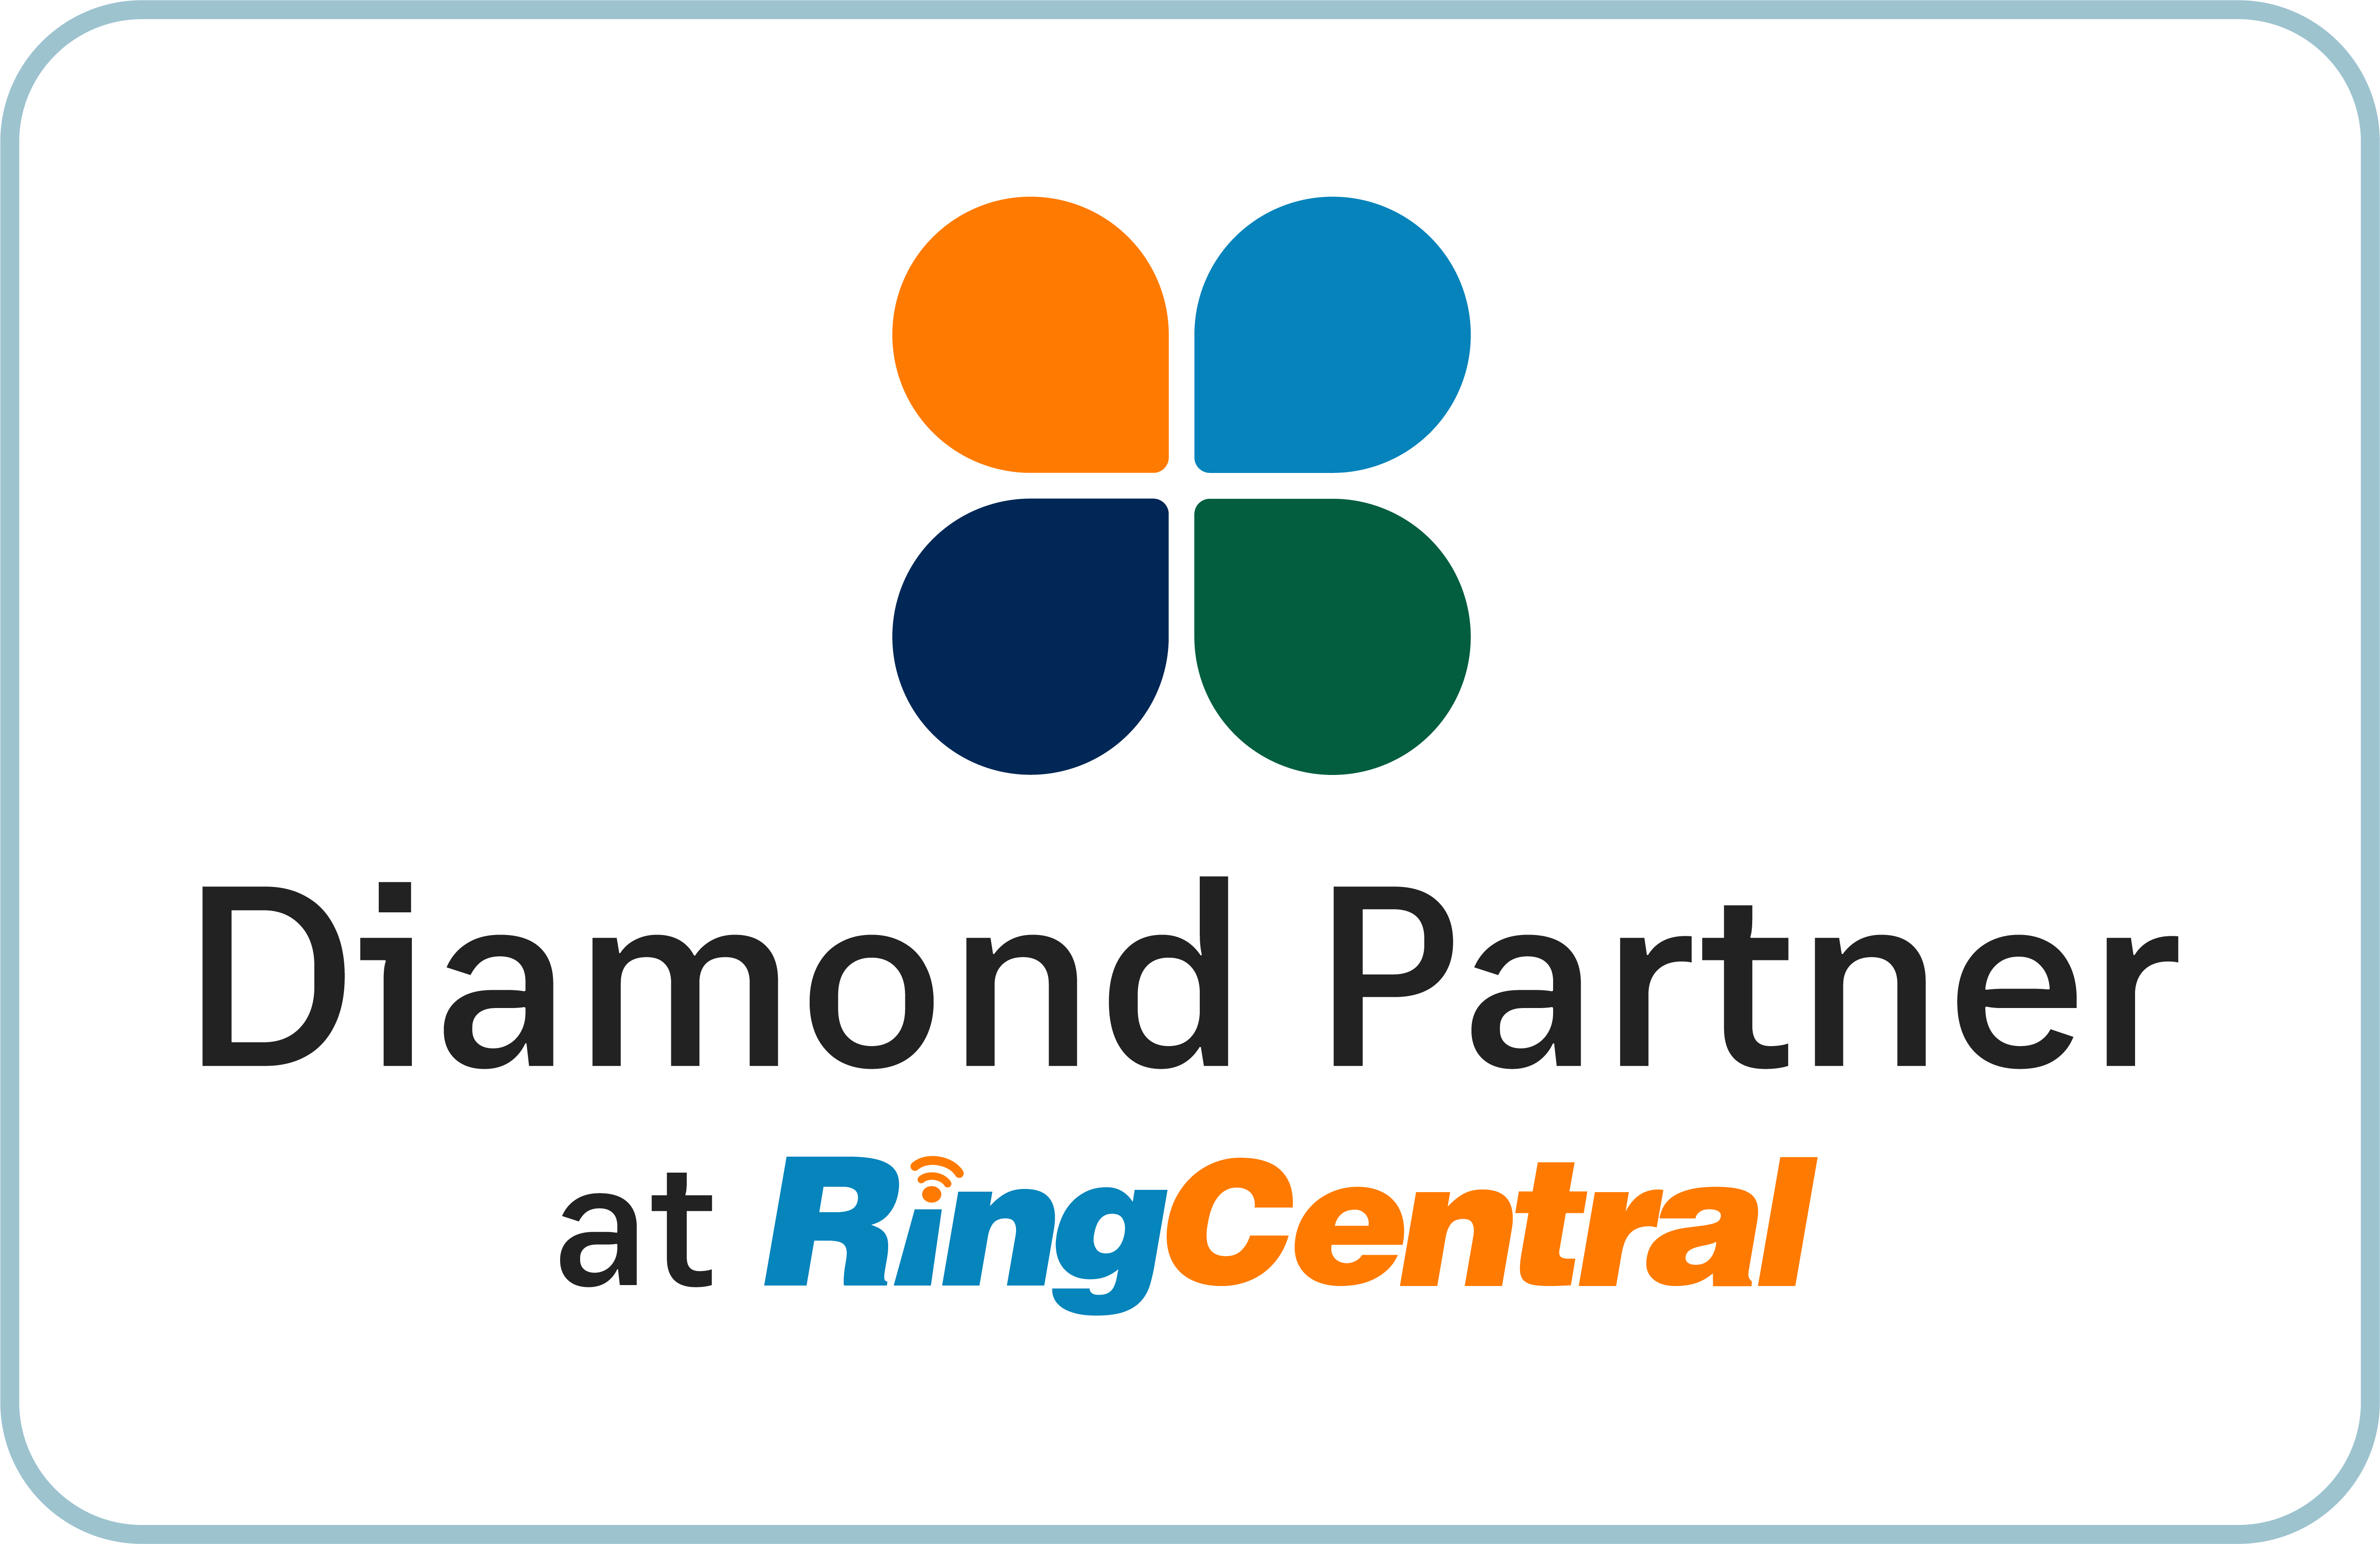 RingCentral Diamond Partner